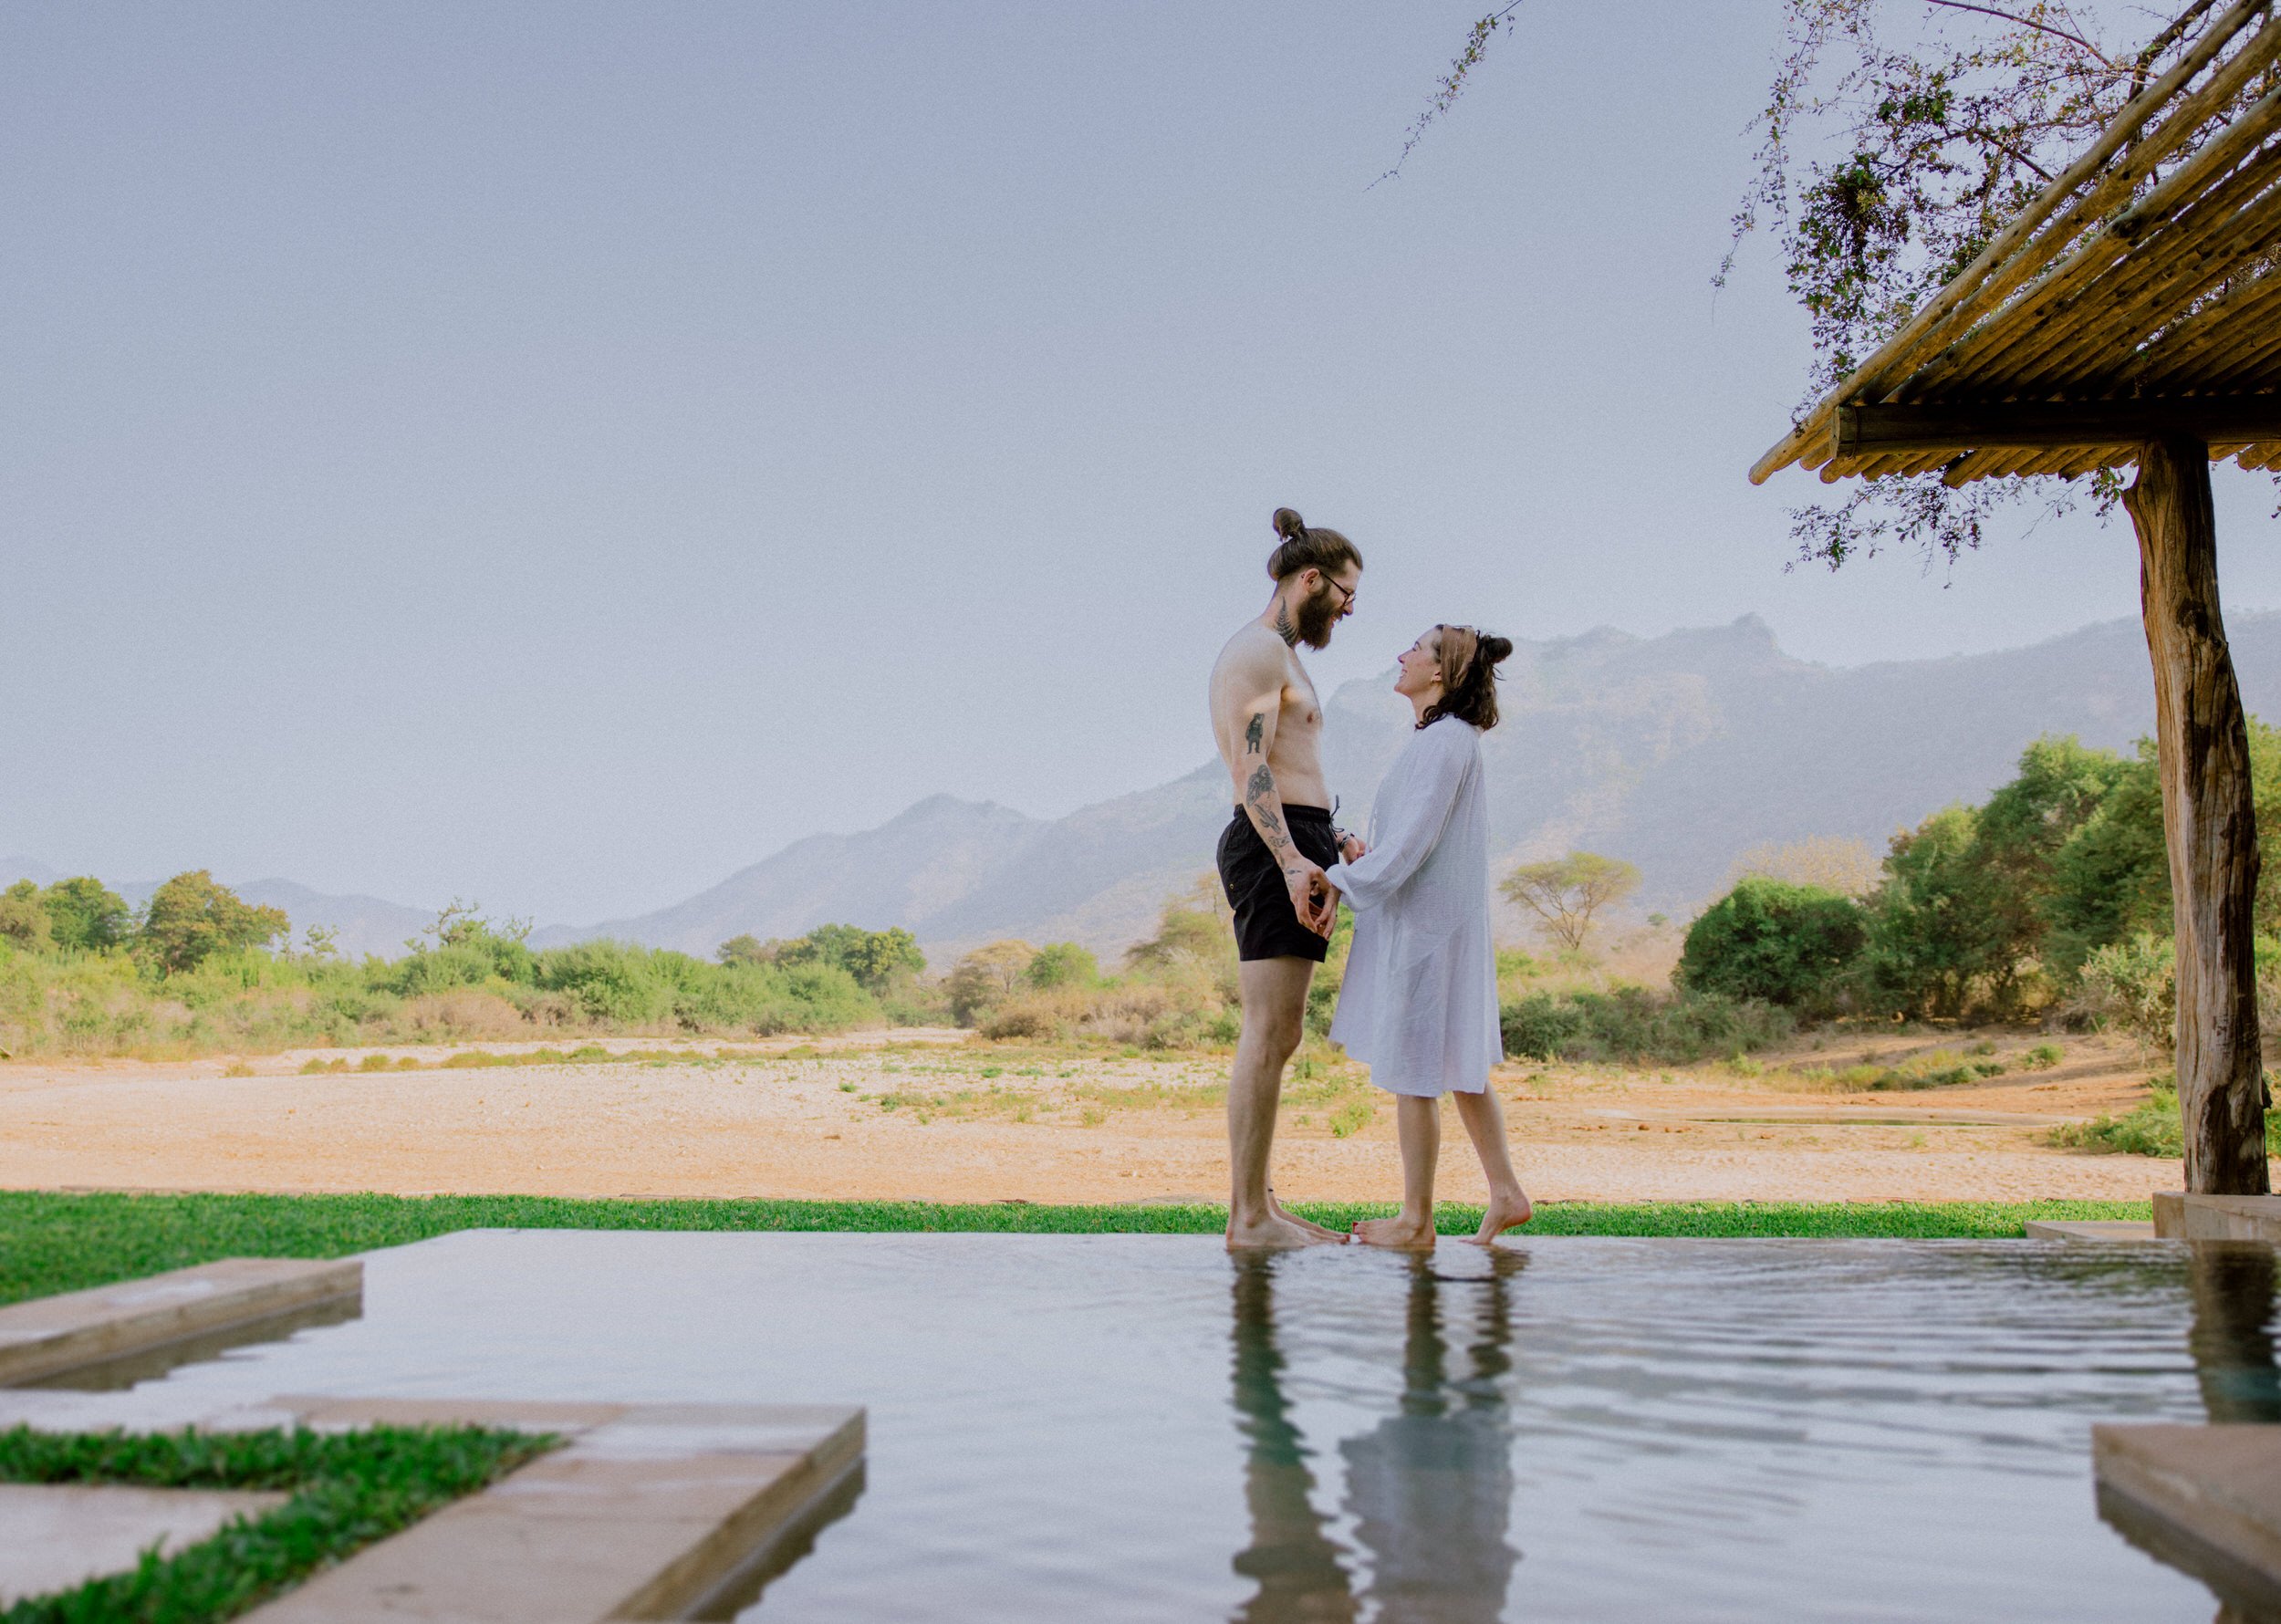 Samburu Kenya Elopement - Susan & Ritchie - Tu Nguyen Wedding - 416.jpg